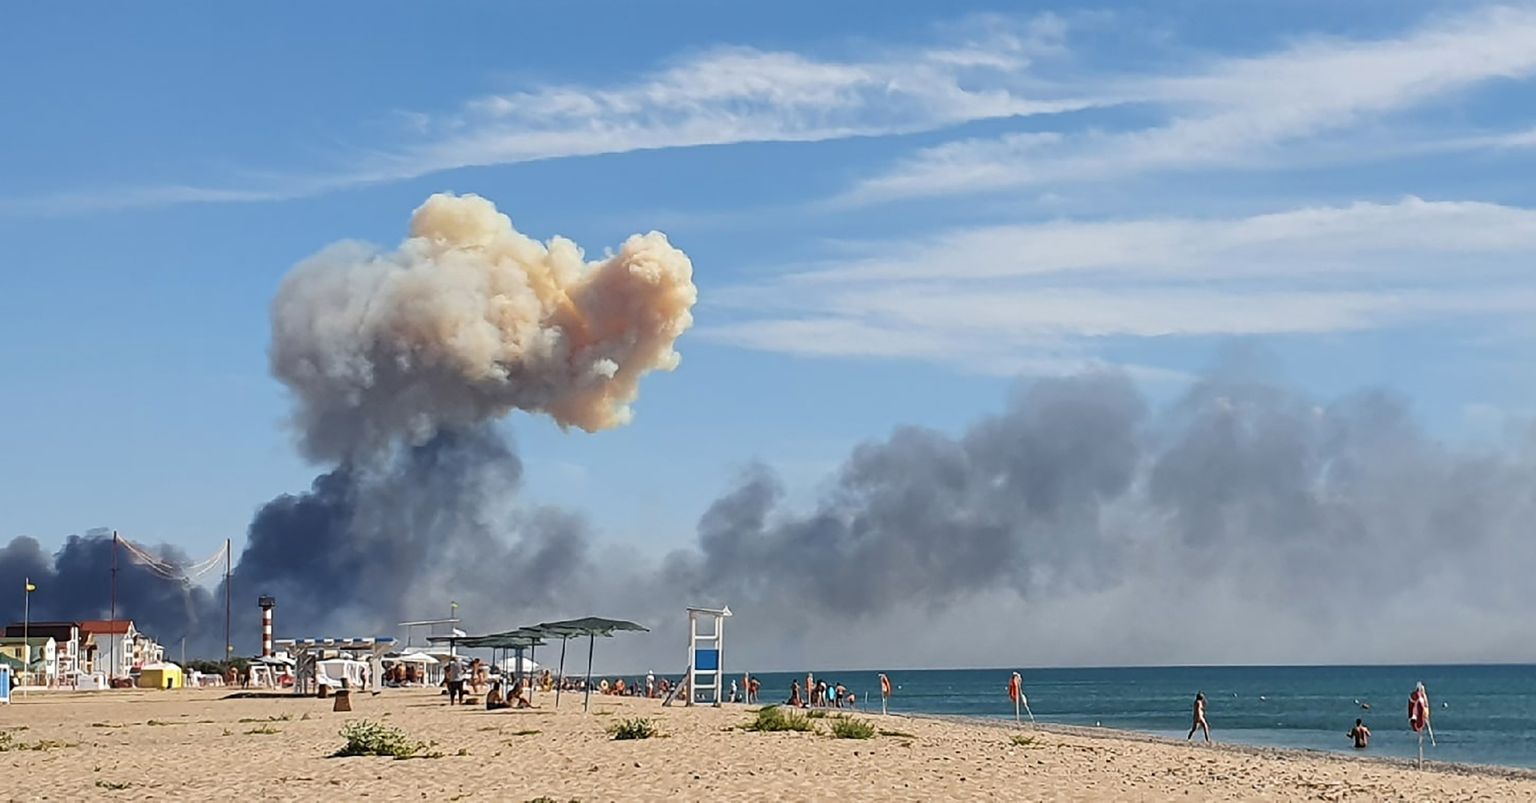 Krimā esošajā Krievijas kara aviācijas bāzē "Saki" paceļas dūmu mākoņi